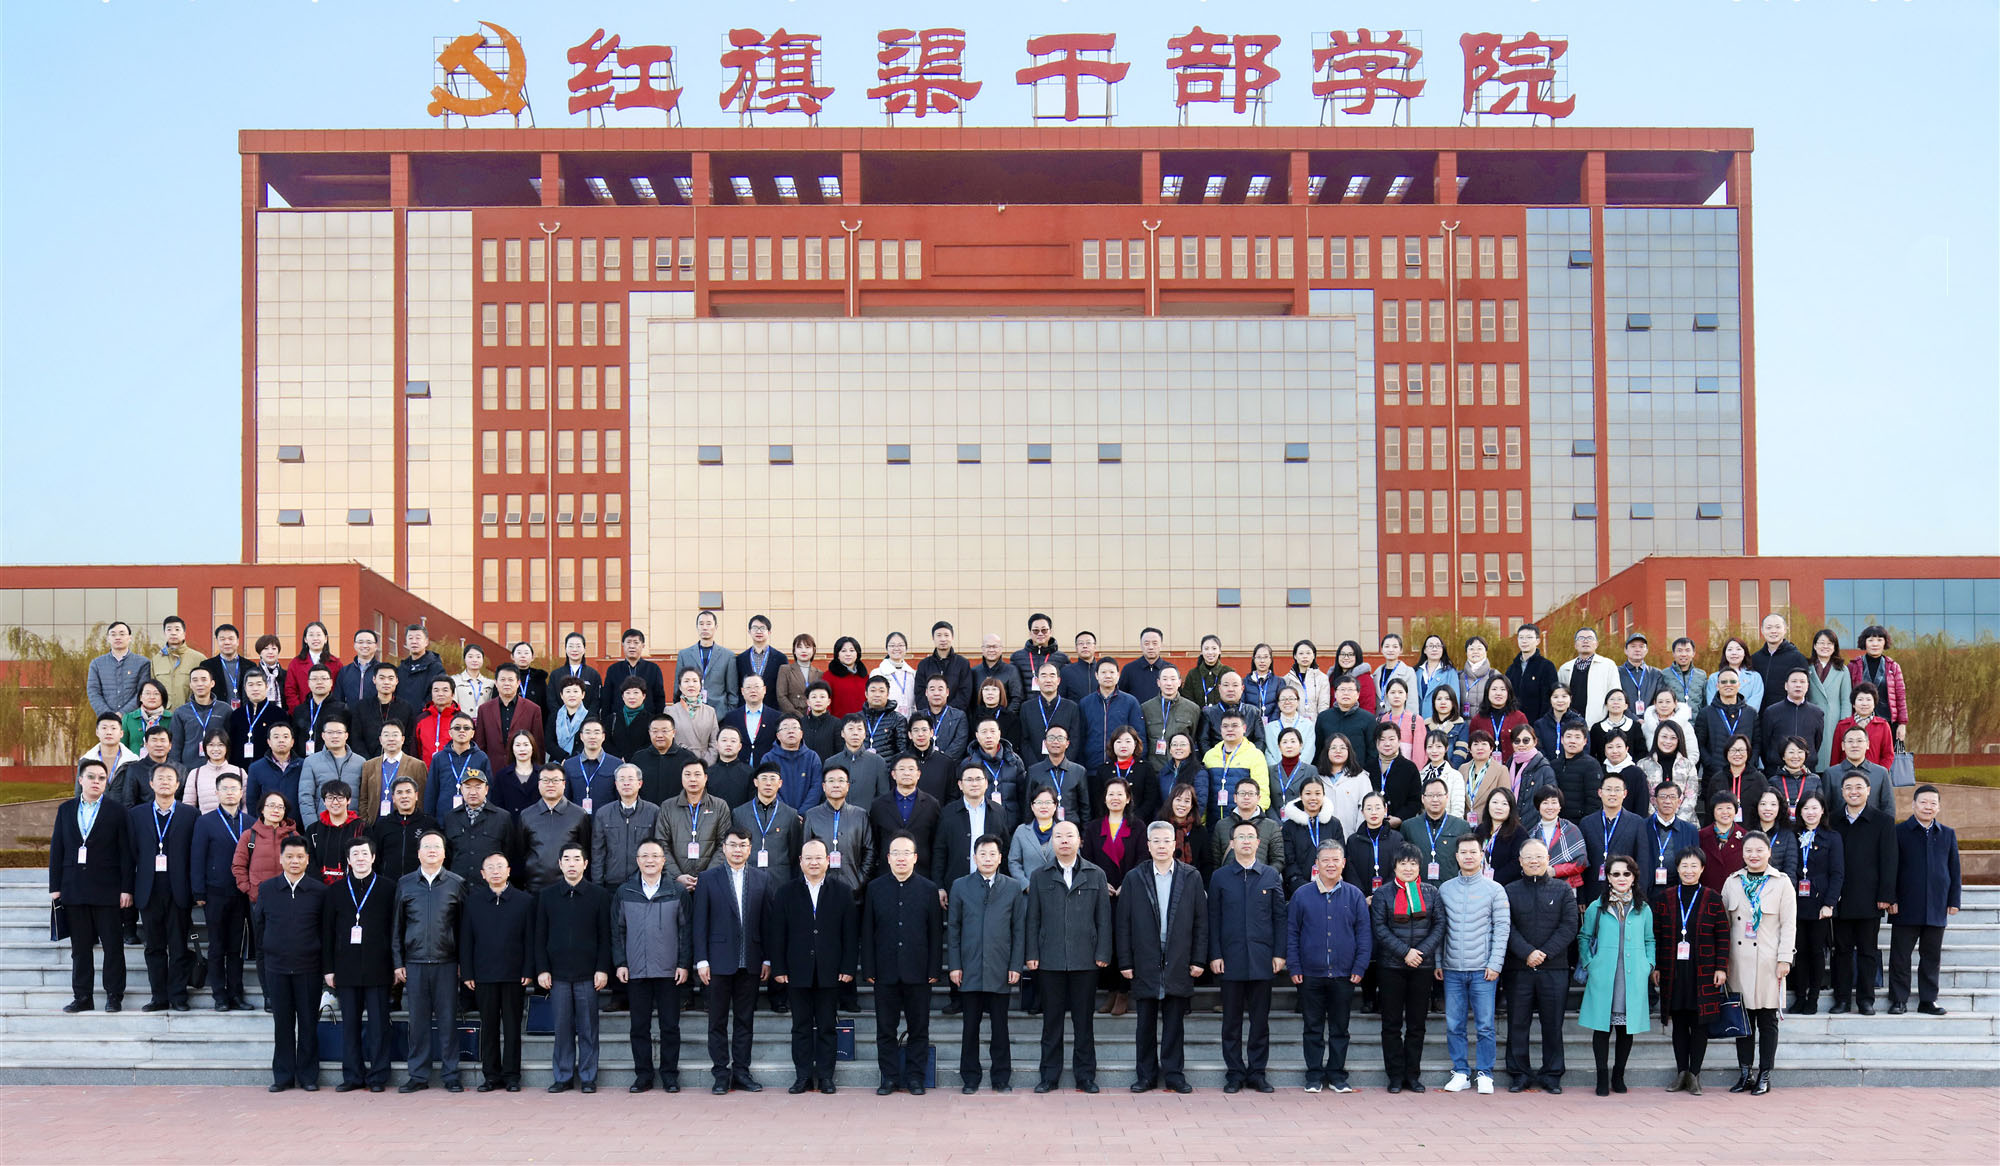 中国青年工作院校协会第四届理事会第三次会议在我院召开